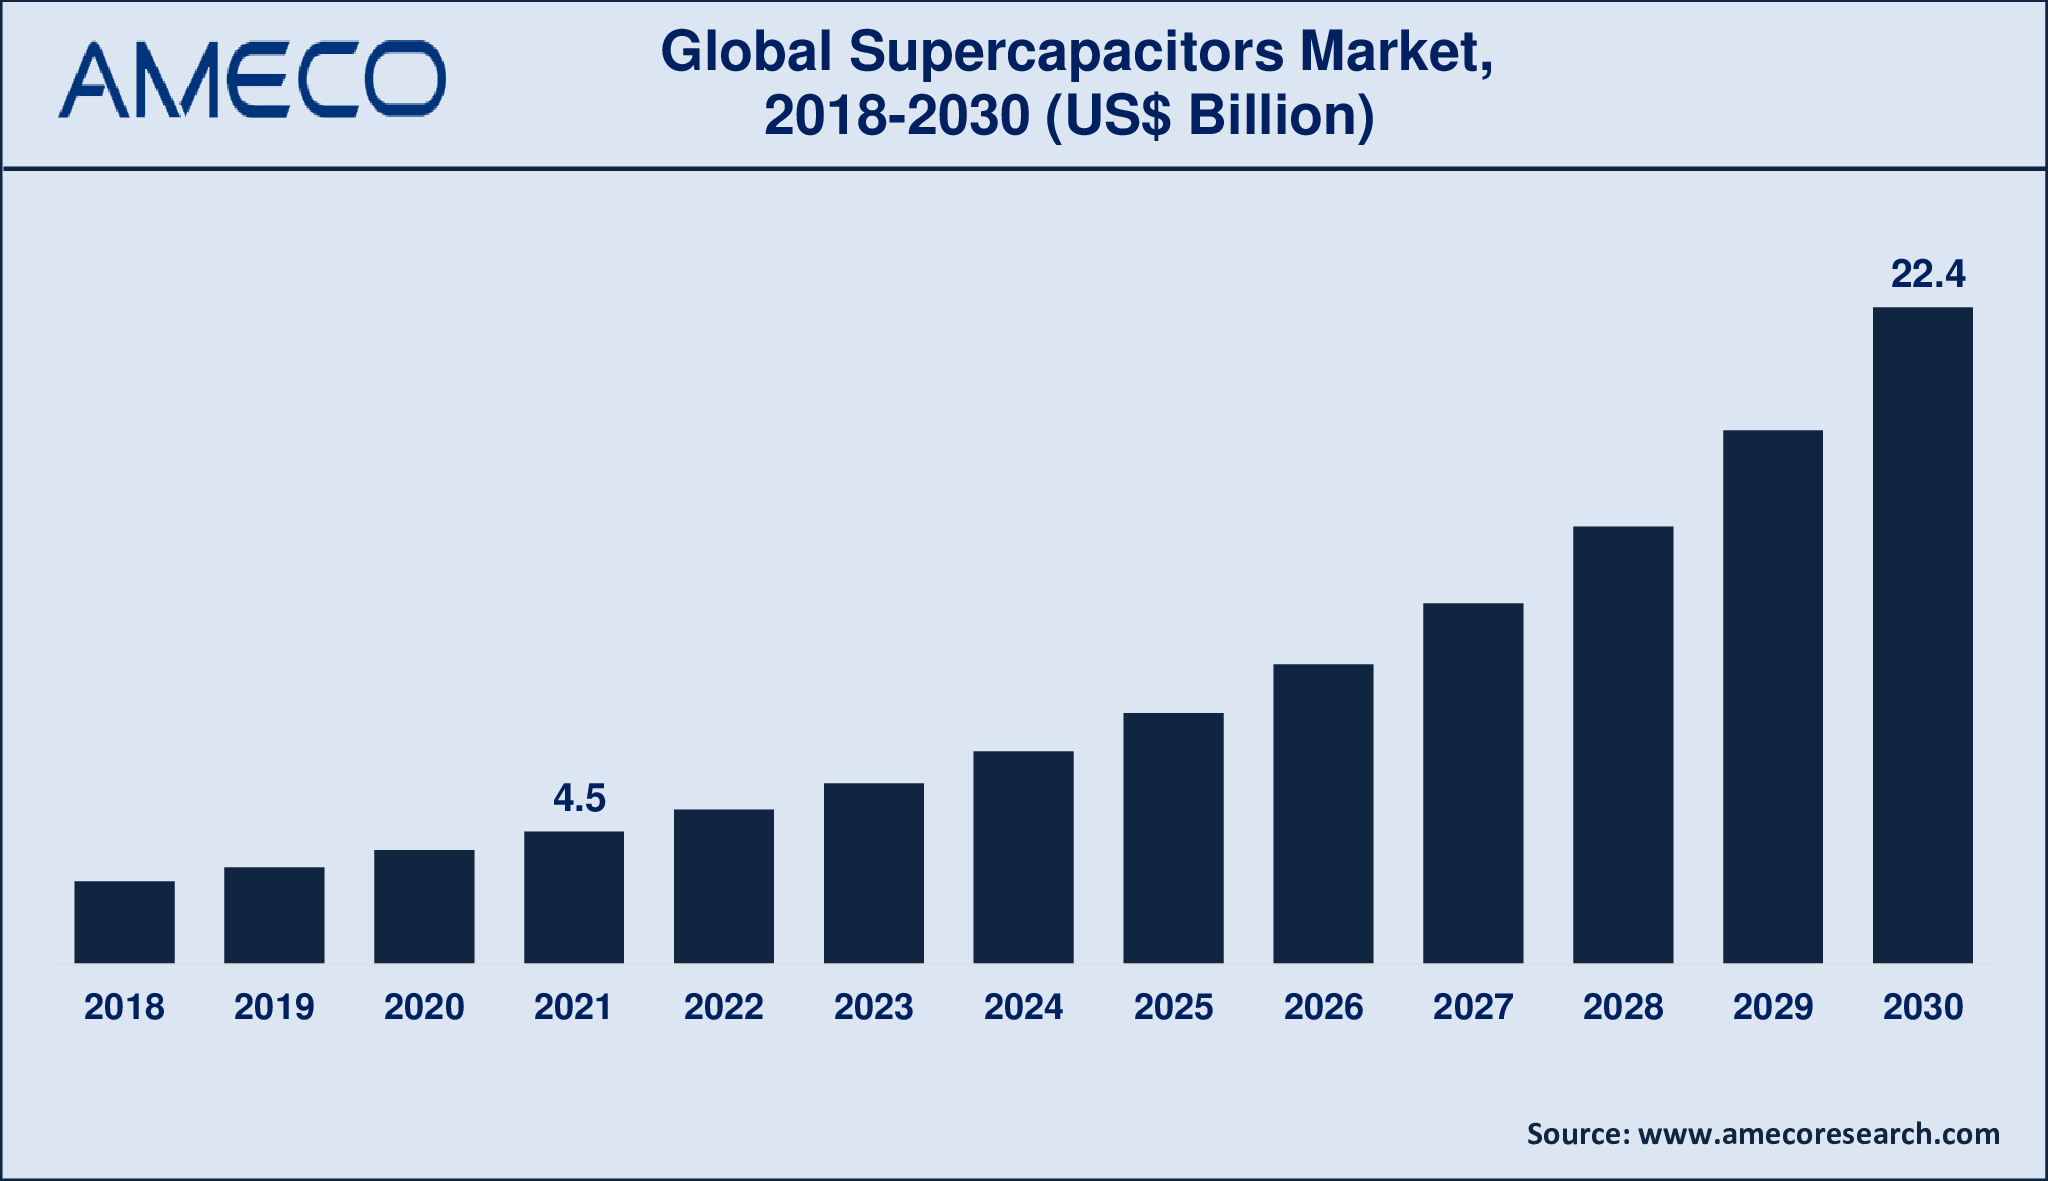 Supercapacitors Market Dynamics